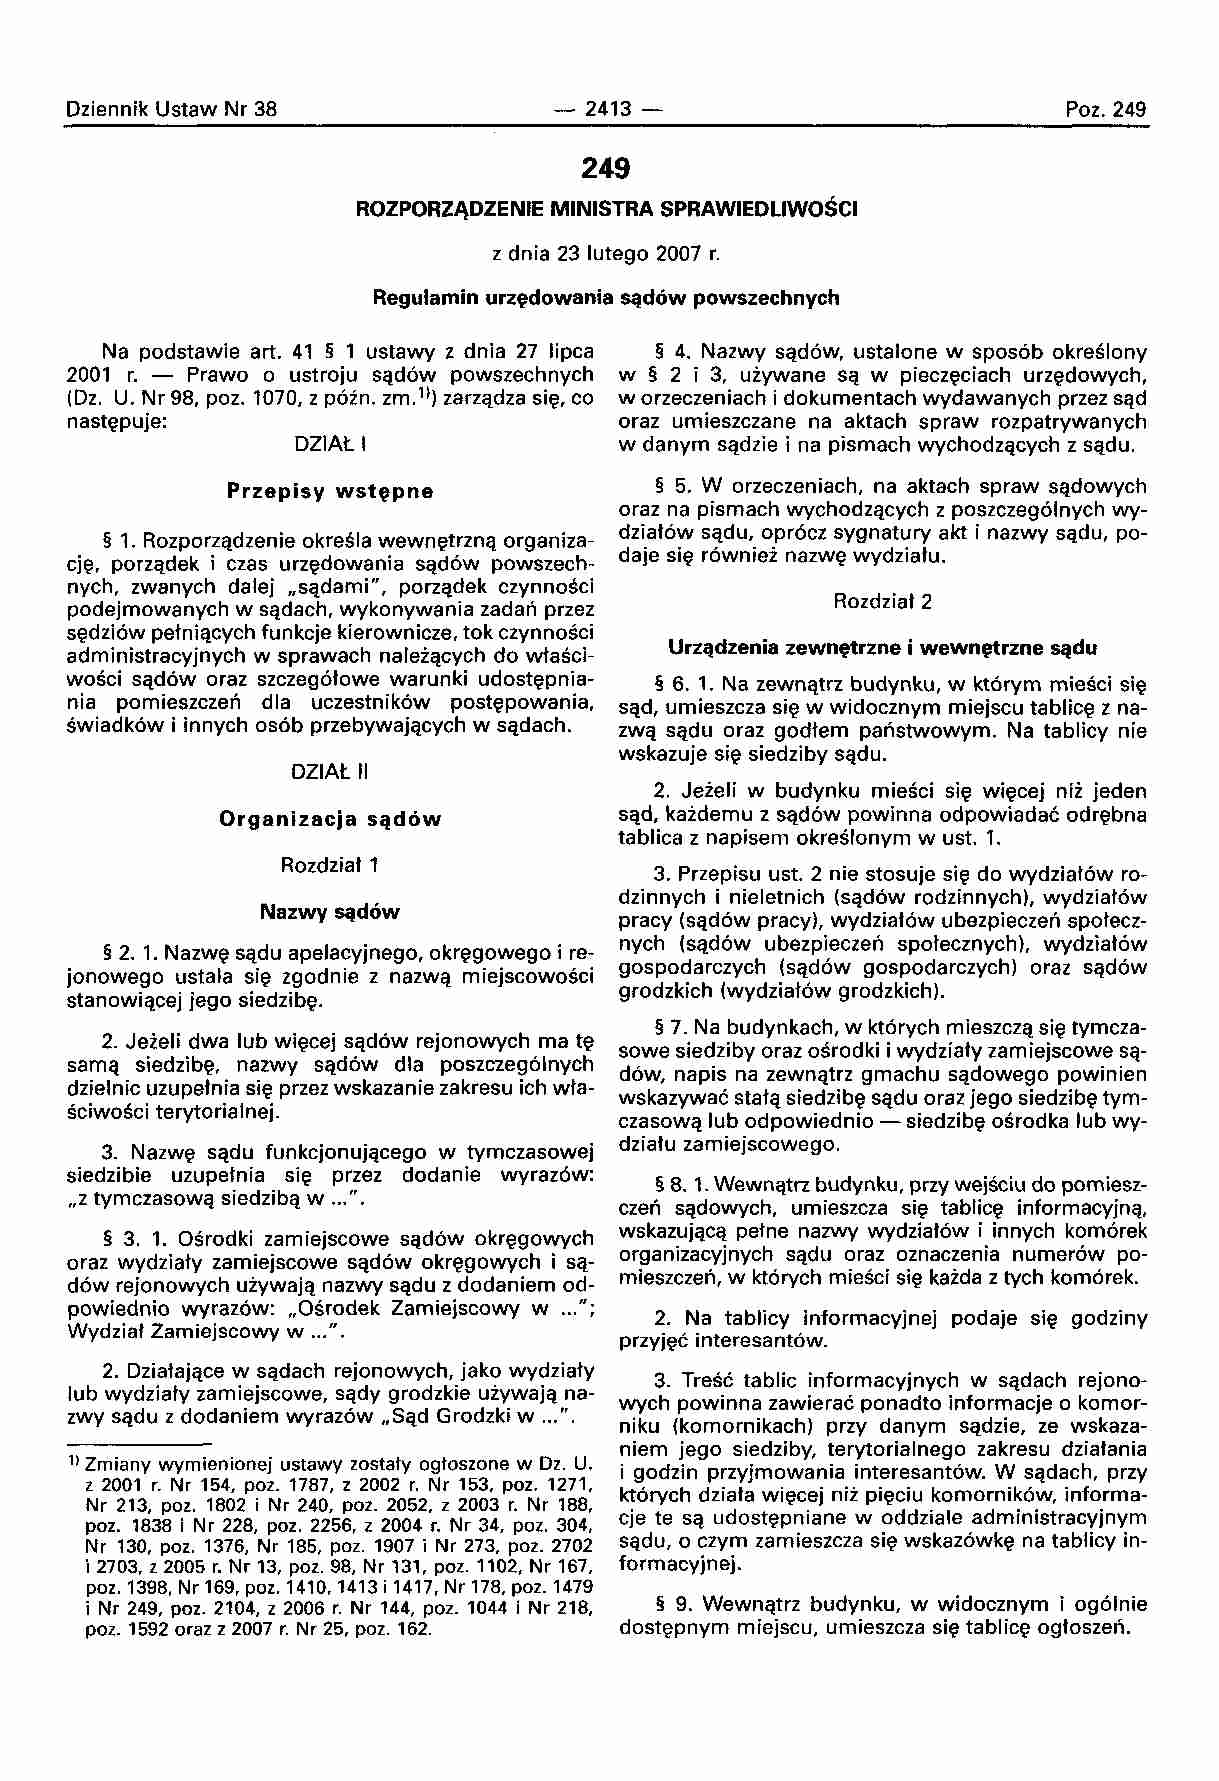 Rregulamin urzędowania sądów powszechnych - strona 1